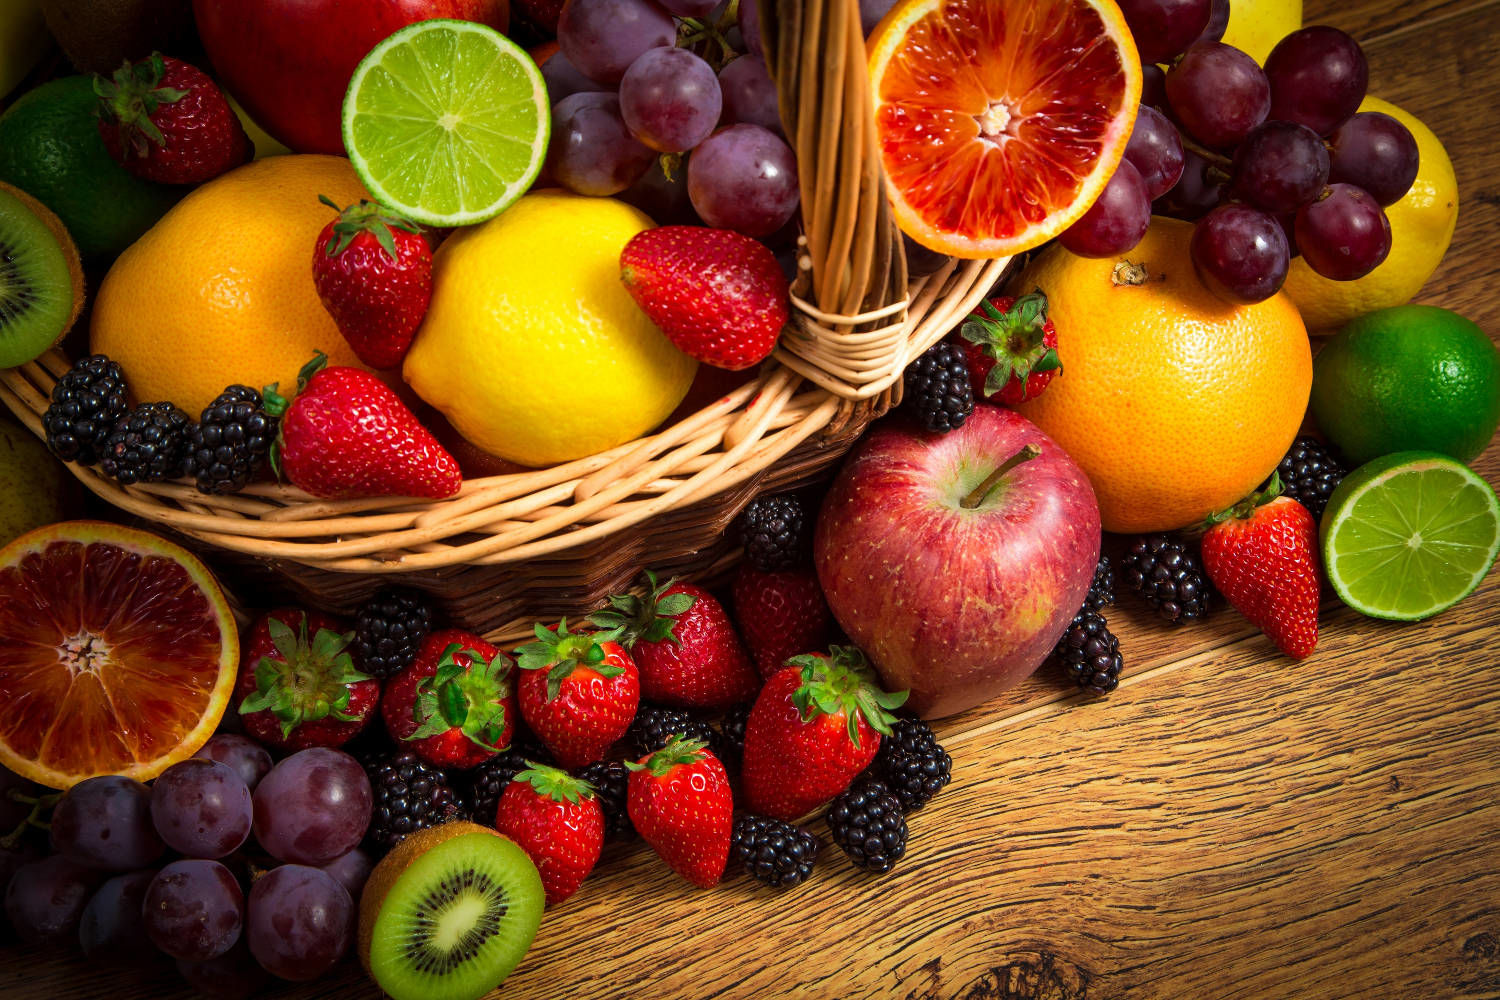 Правда ли, что ягоды и фрукты не рекомендуют есть после основного приема пищи